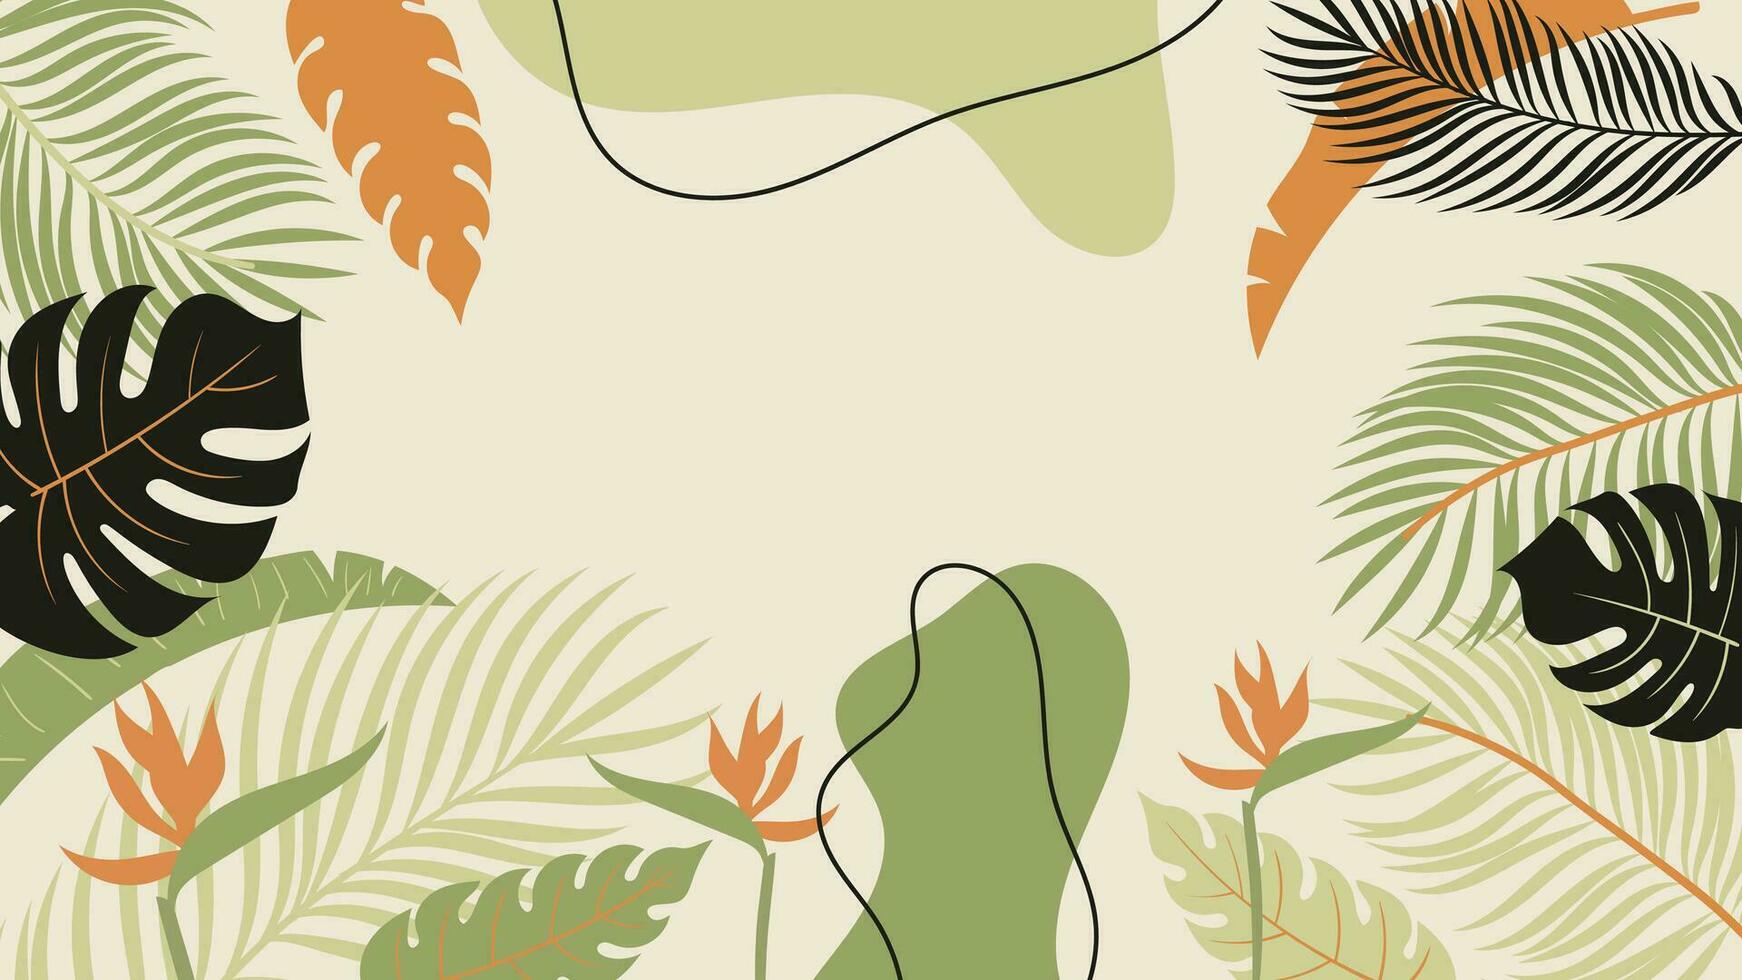 Woud tropisch achtergrond vector illustratie. oerwoud planten, monster, palm bladeren, banaan blad, exotisch zomertijd stijl. botanisch backdrop ontwerp voor decoratie, behang, Product presentatie.